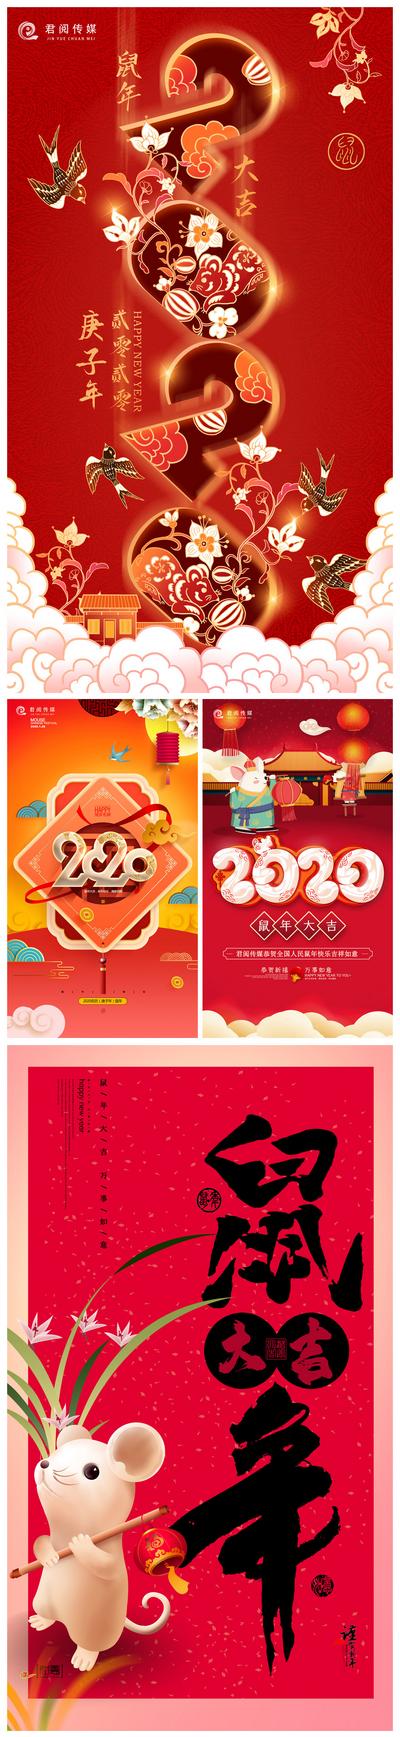 【南门网】海报 2020 鼠年 贺岁 春节 喜气 新年 中国传统节日 数字 数字 毛笔字 卡通 燕子 祥云